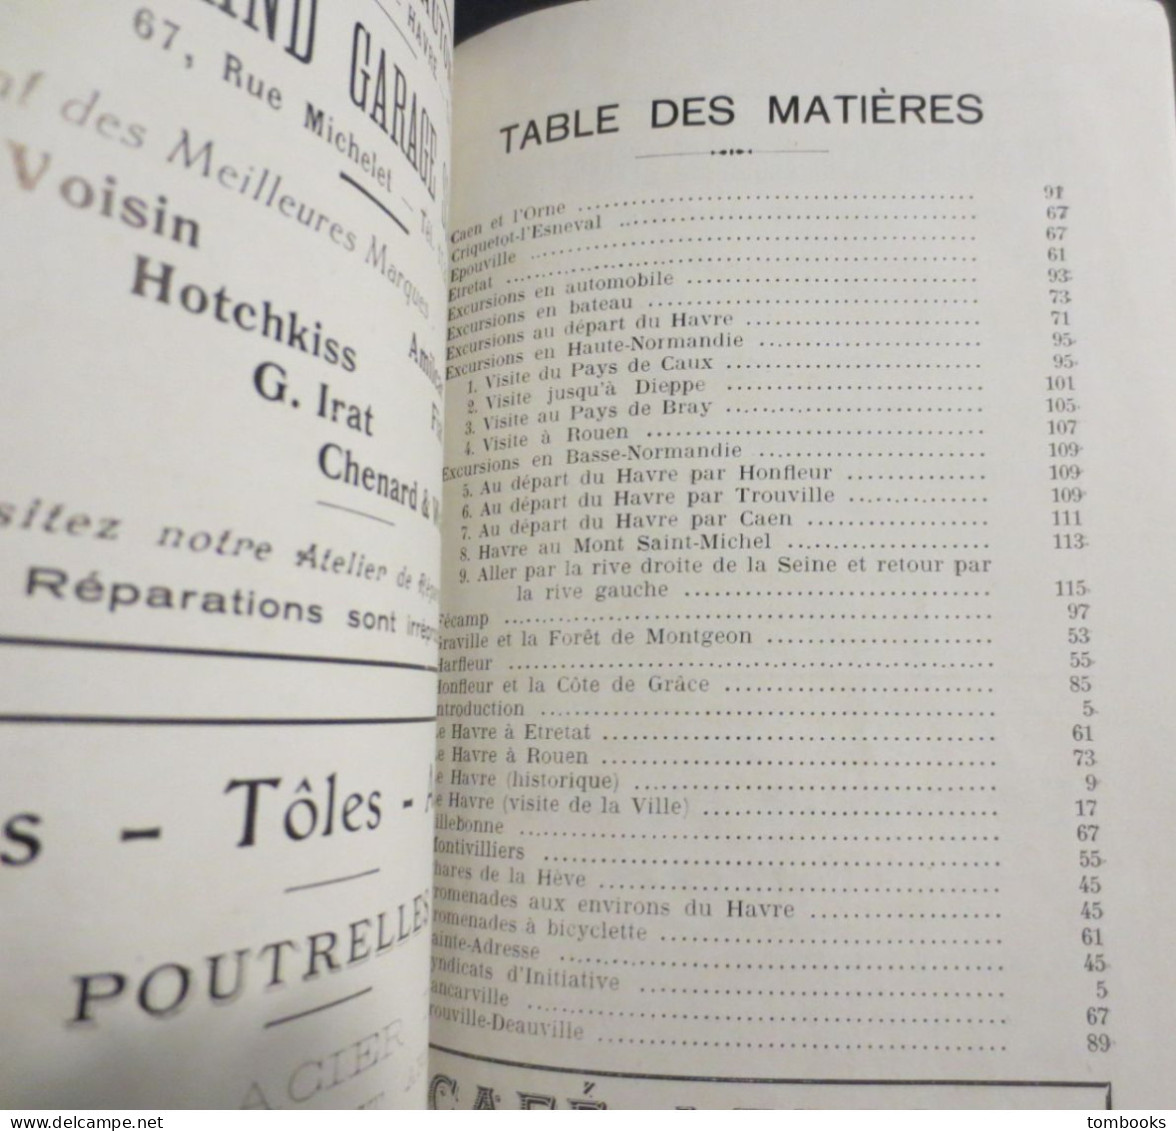 Le Havre - Guide du Havre & de la Région par Gaston Hauville - 1929 - B.E -